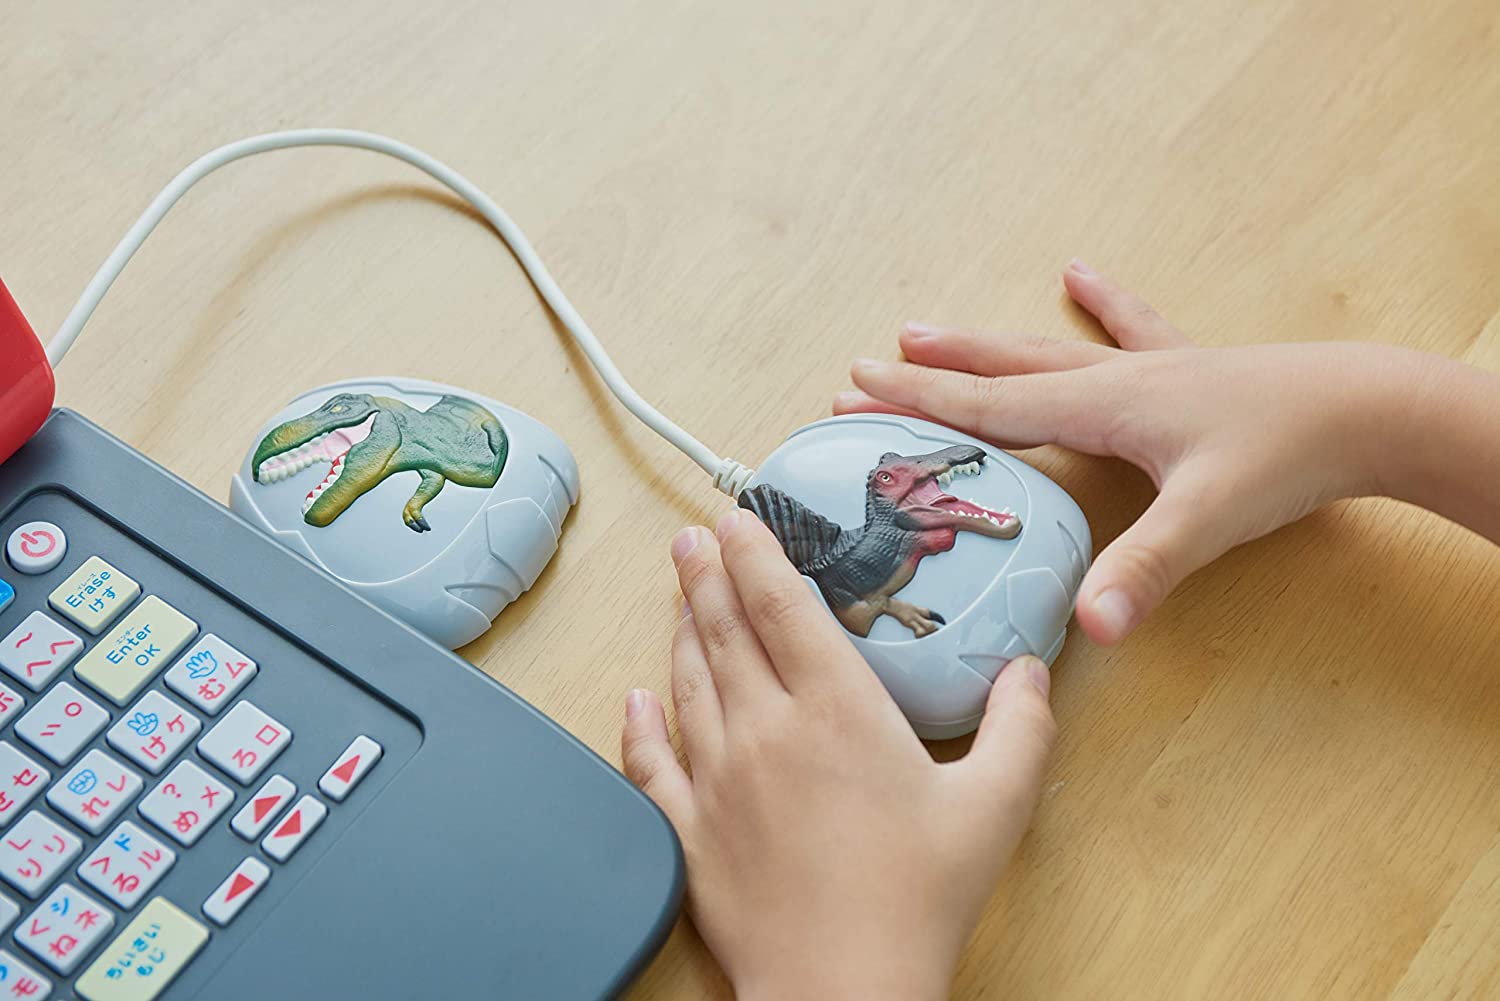 楽天市場 セガトイズ Sega Toys マウスでバトル 恐竜図鑑パソコン 楽しく学べる 勉強 プログラミング 学習 子供のおもちゃ ゲーム おもちゃ 女の子 女の子ギフト 子ども誕生日 入学式 慶應式知育玩具 学習玩具専門店